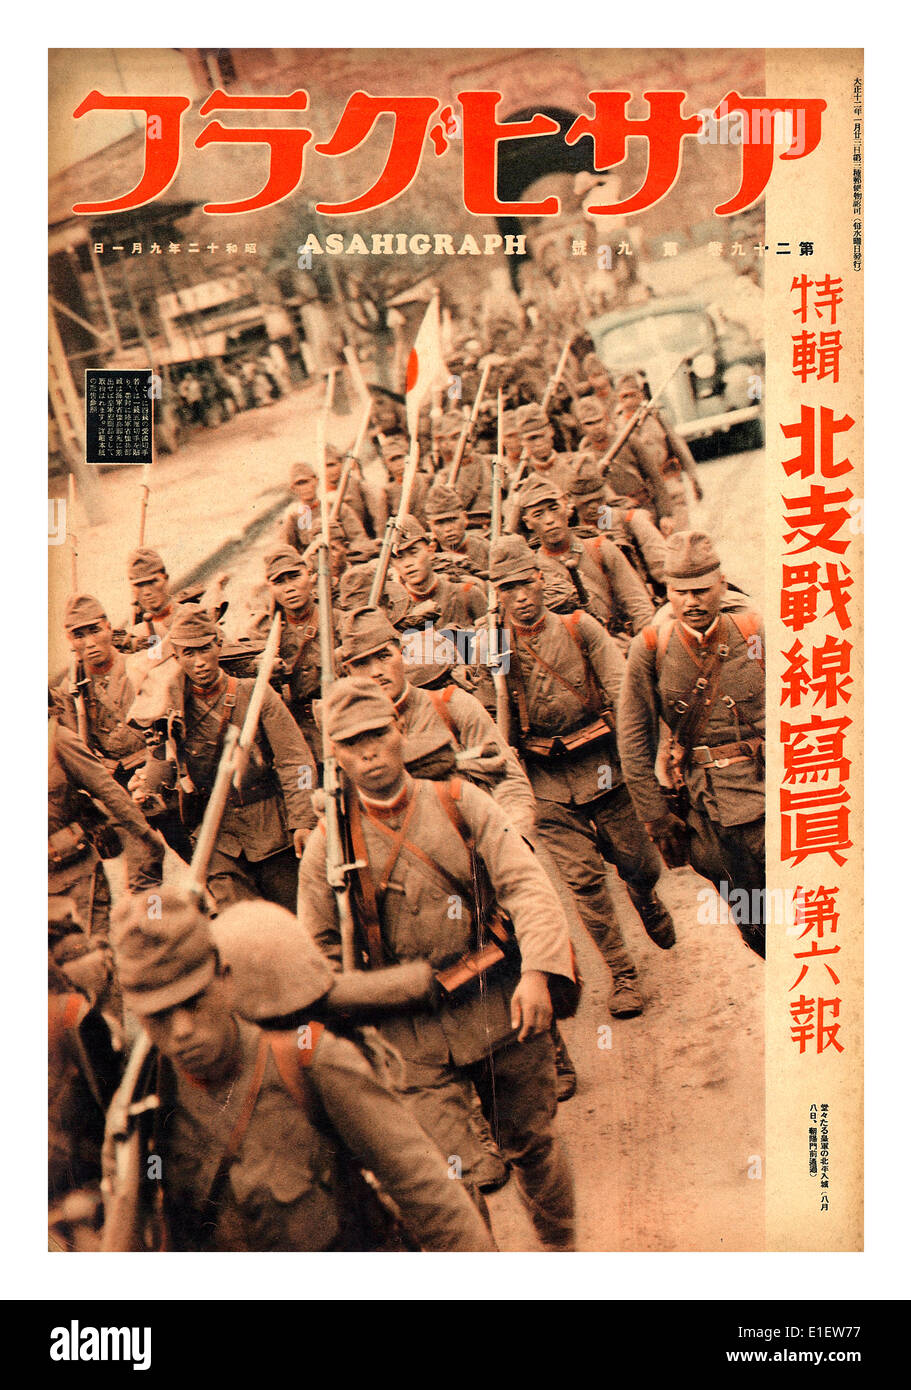 Jahrgang 1940 AsahiGraph japanischen Magazin mit WW2 berüchtigte Japanische Armee militärische Truppen marschieren Abbildung auf der vorderen Abdeckung Weltkrieg II. Stockfoto